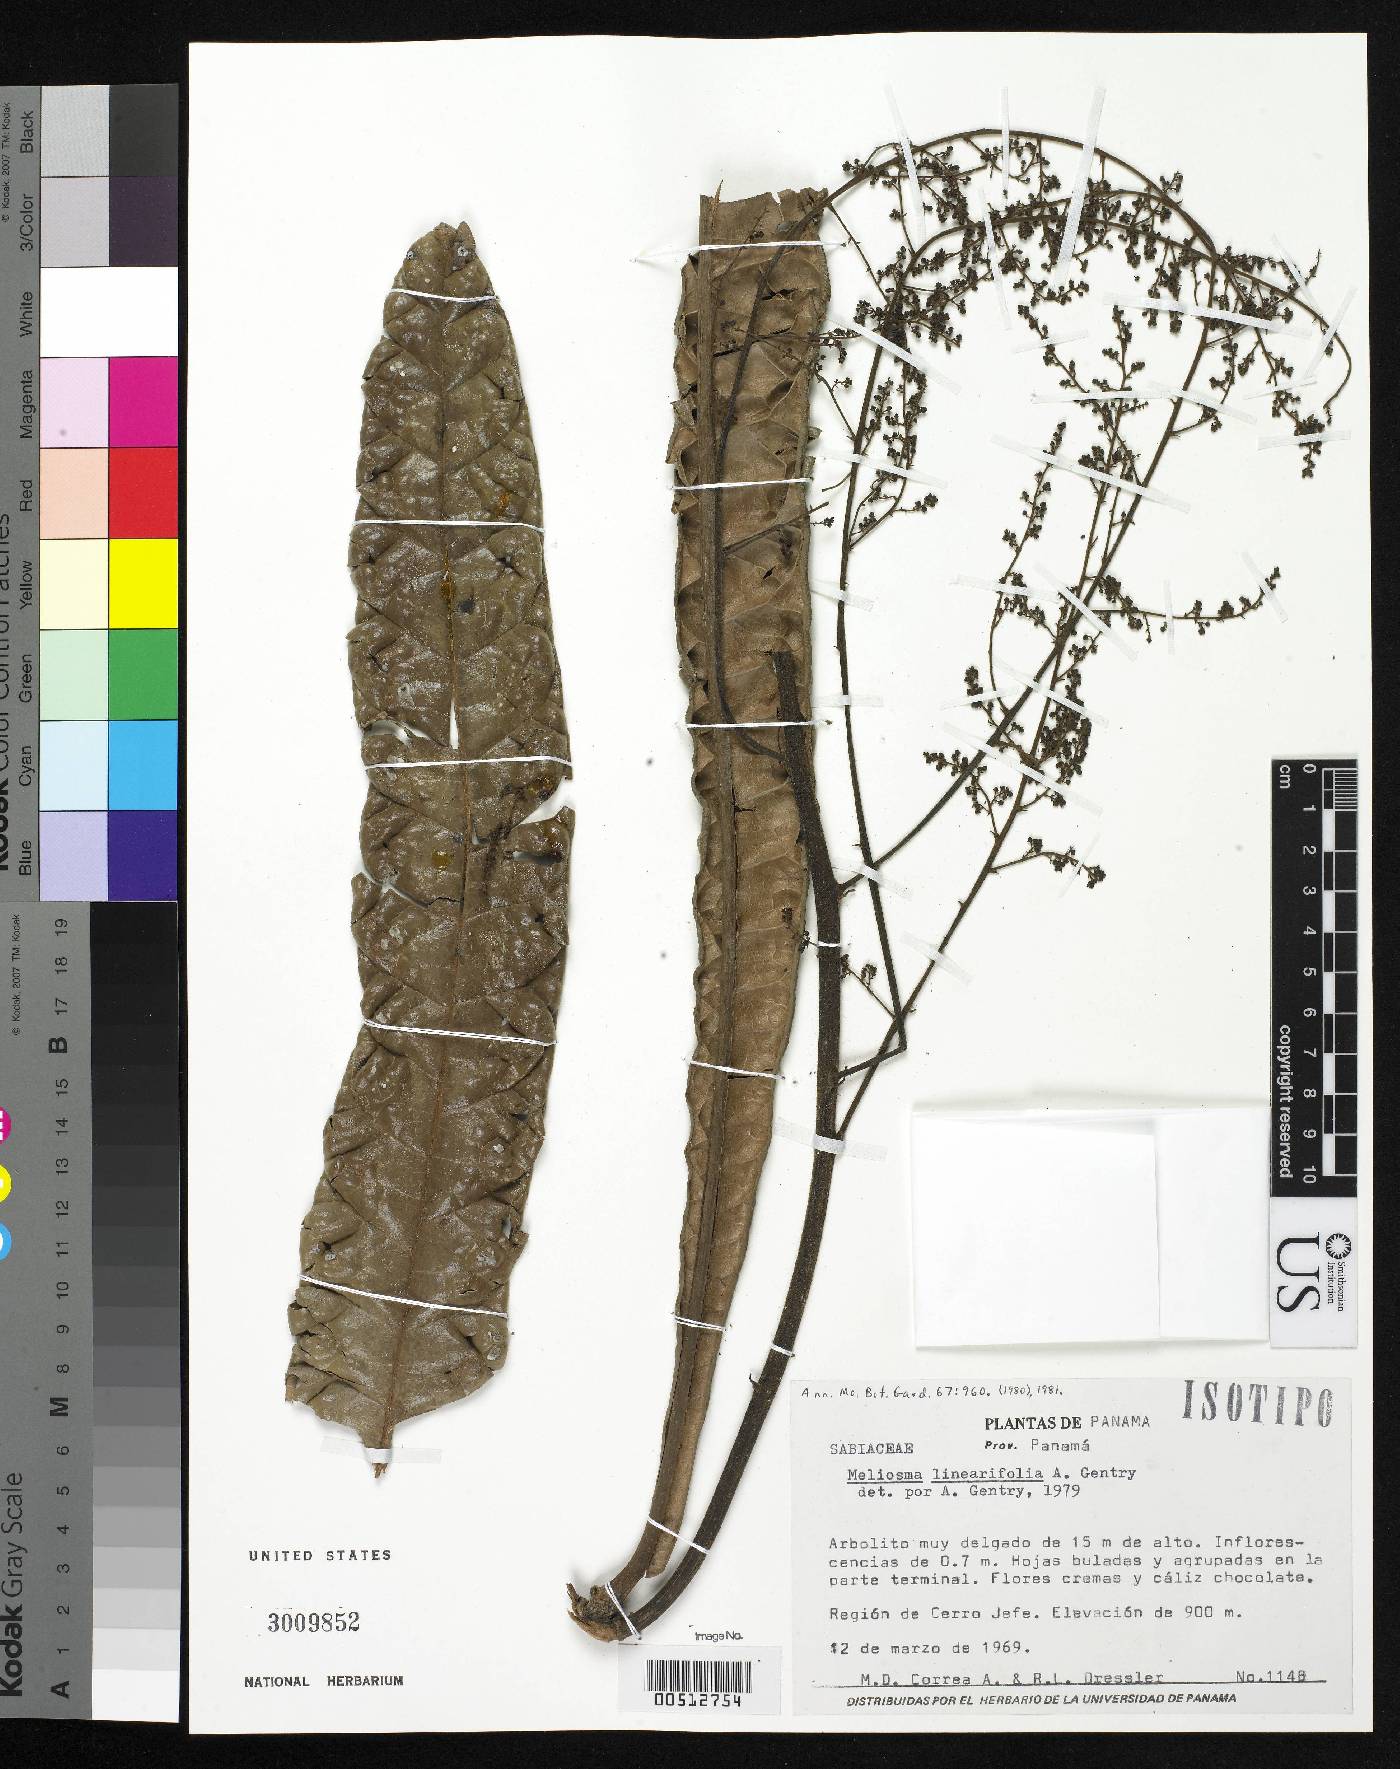 Meliosma linearifolia image